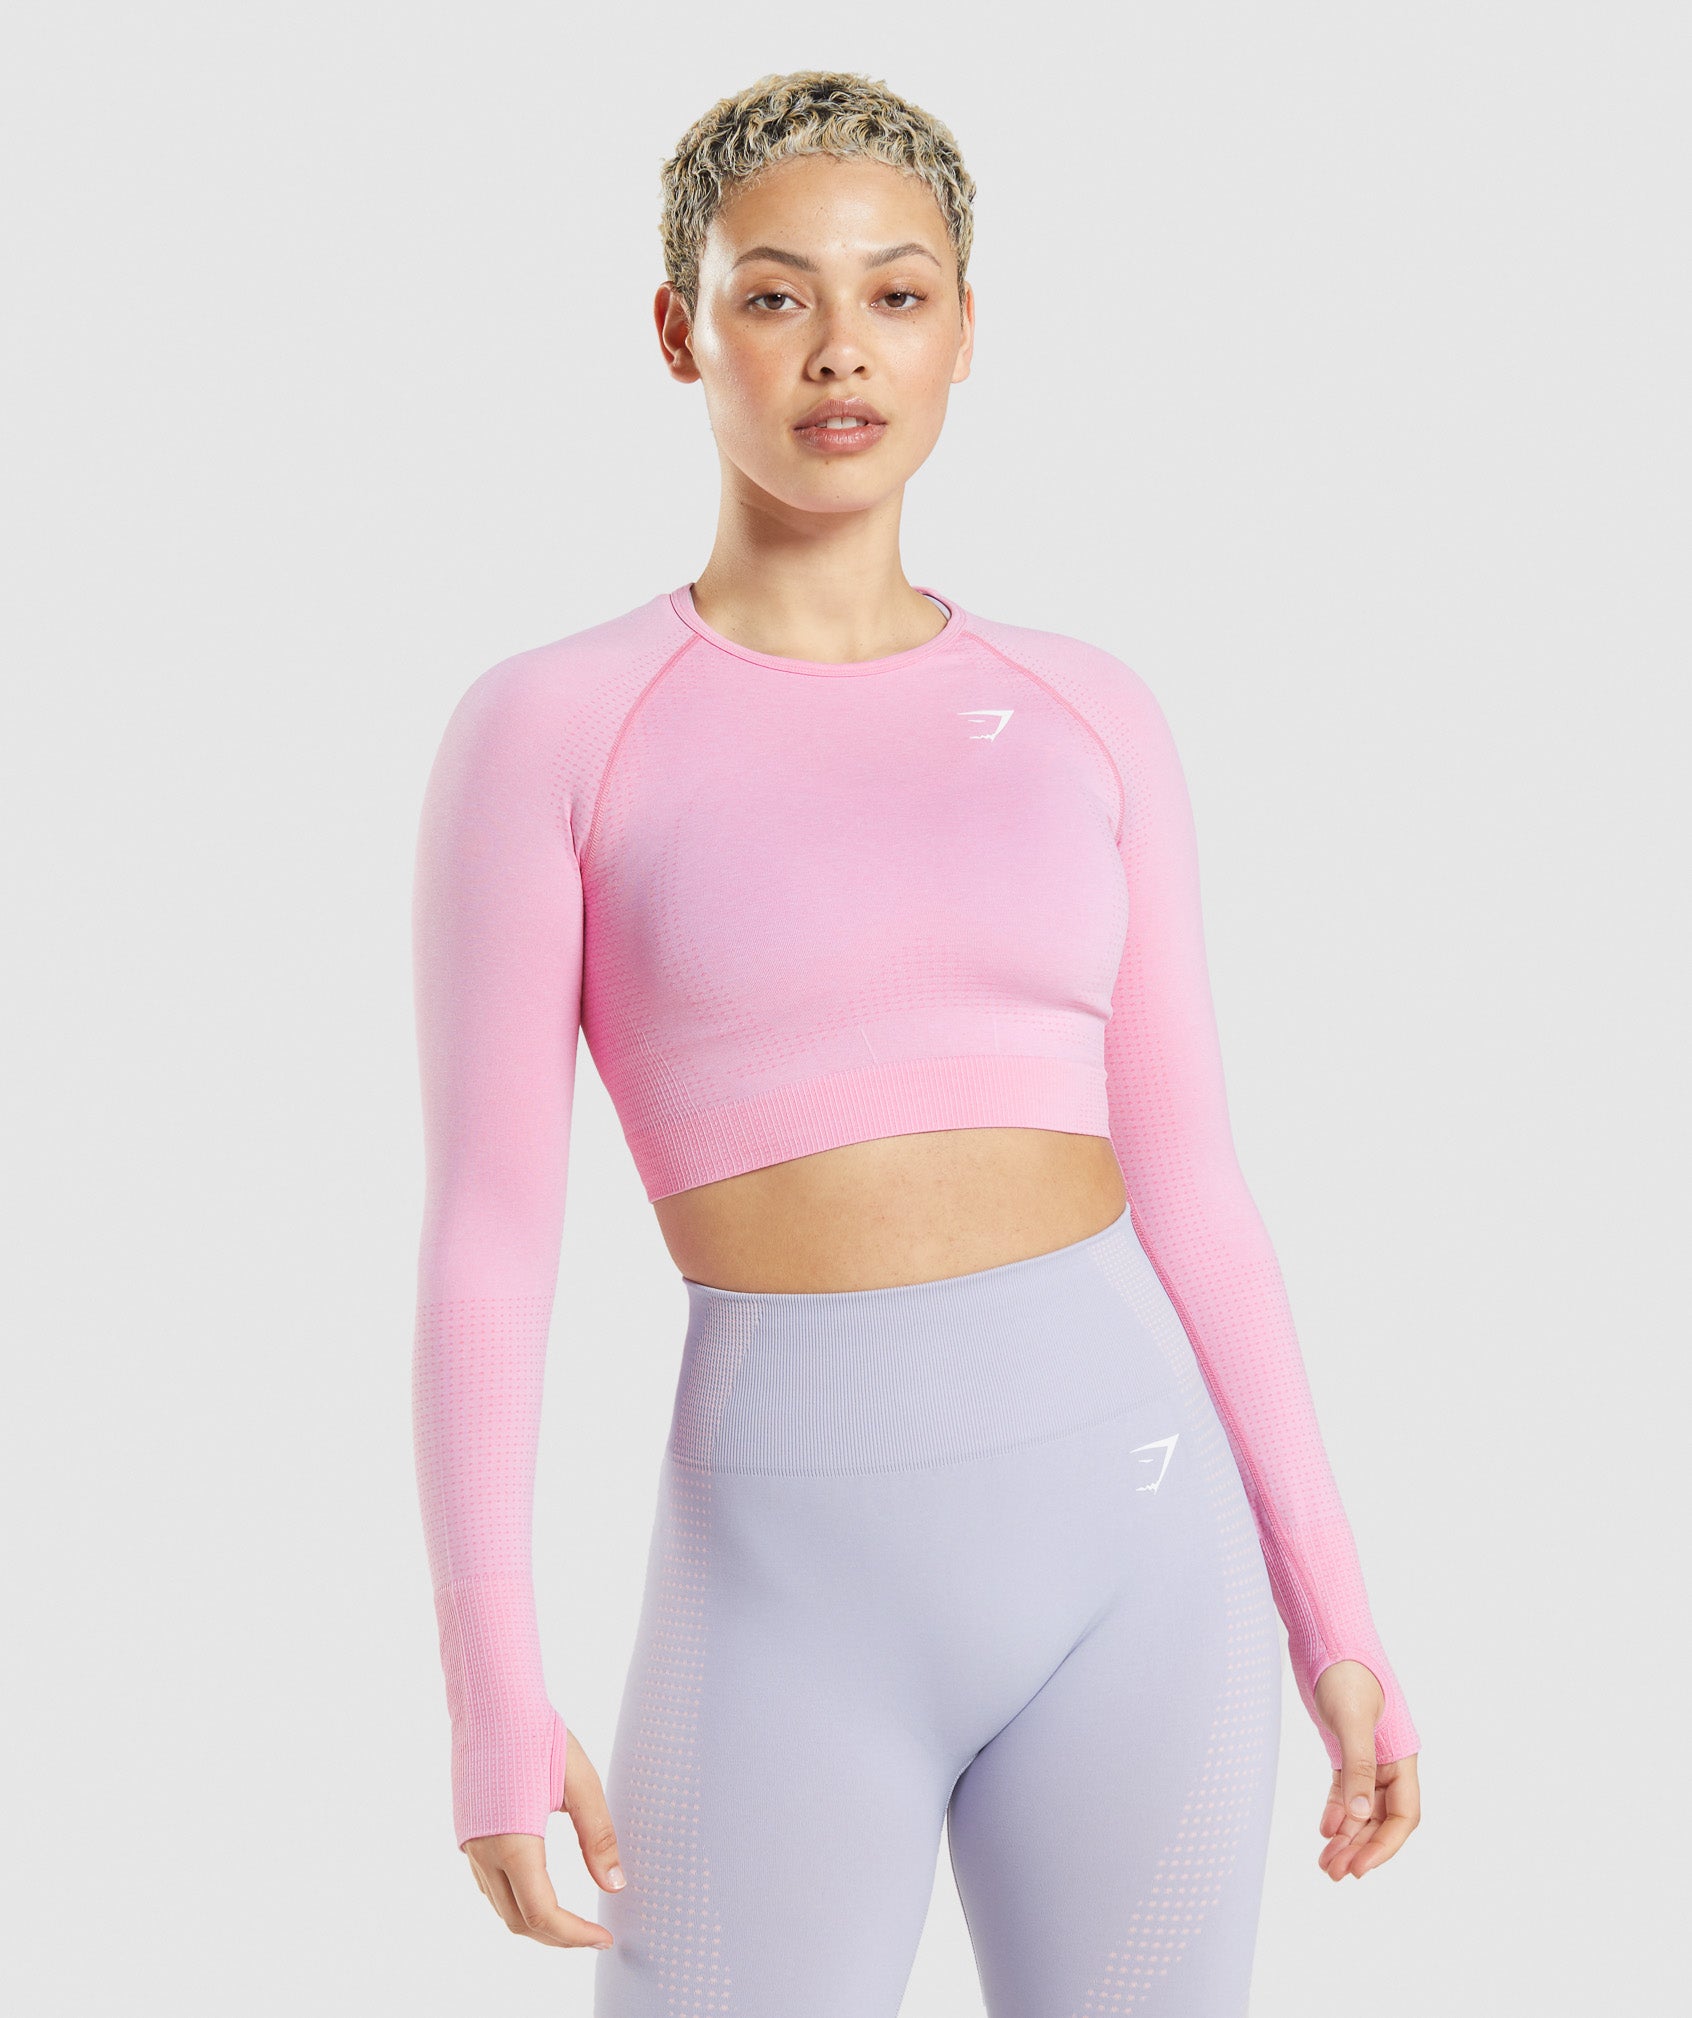 Gymshark Whitney Short Sleeve Crop Top - Pressed Petal Pink